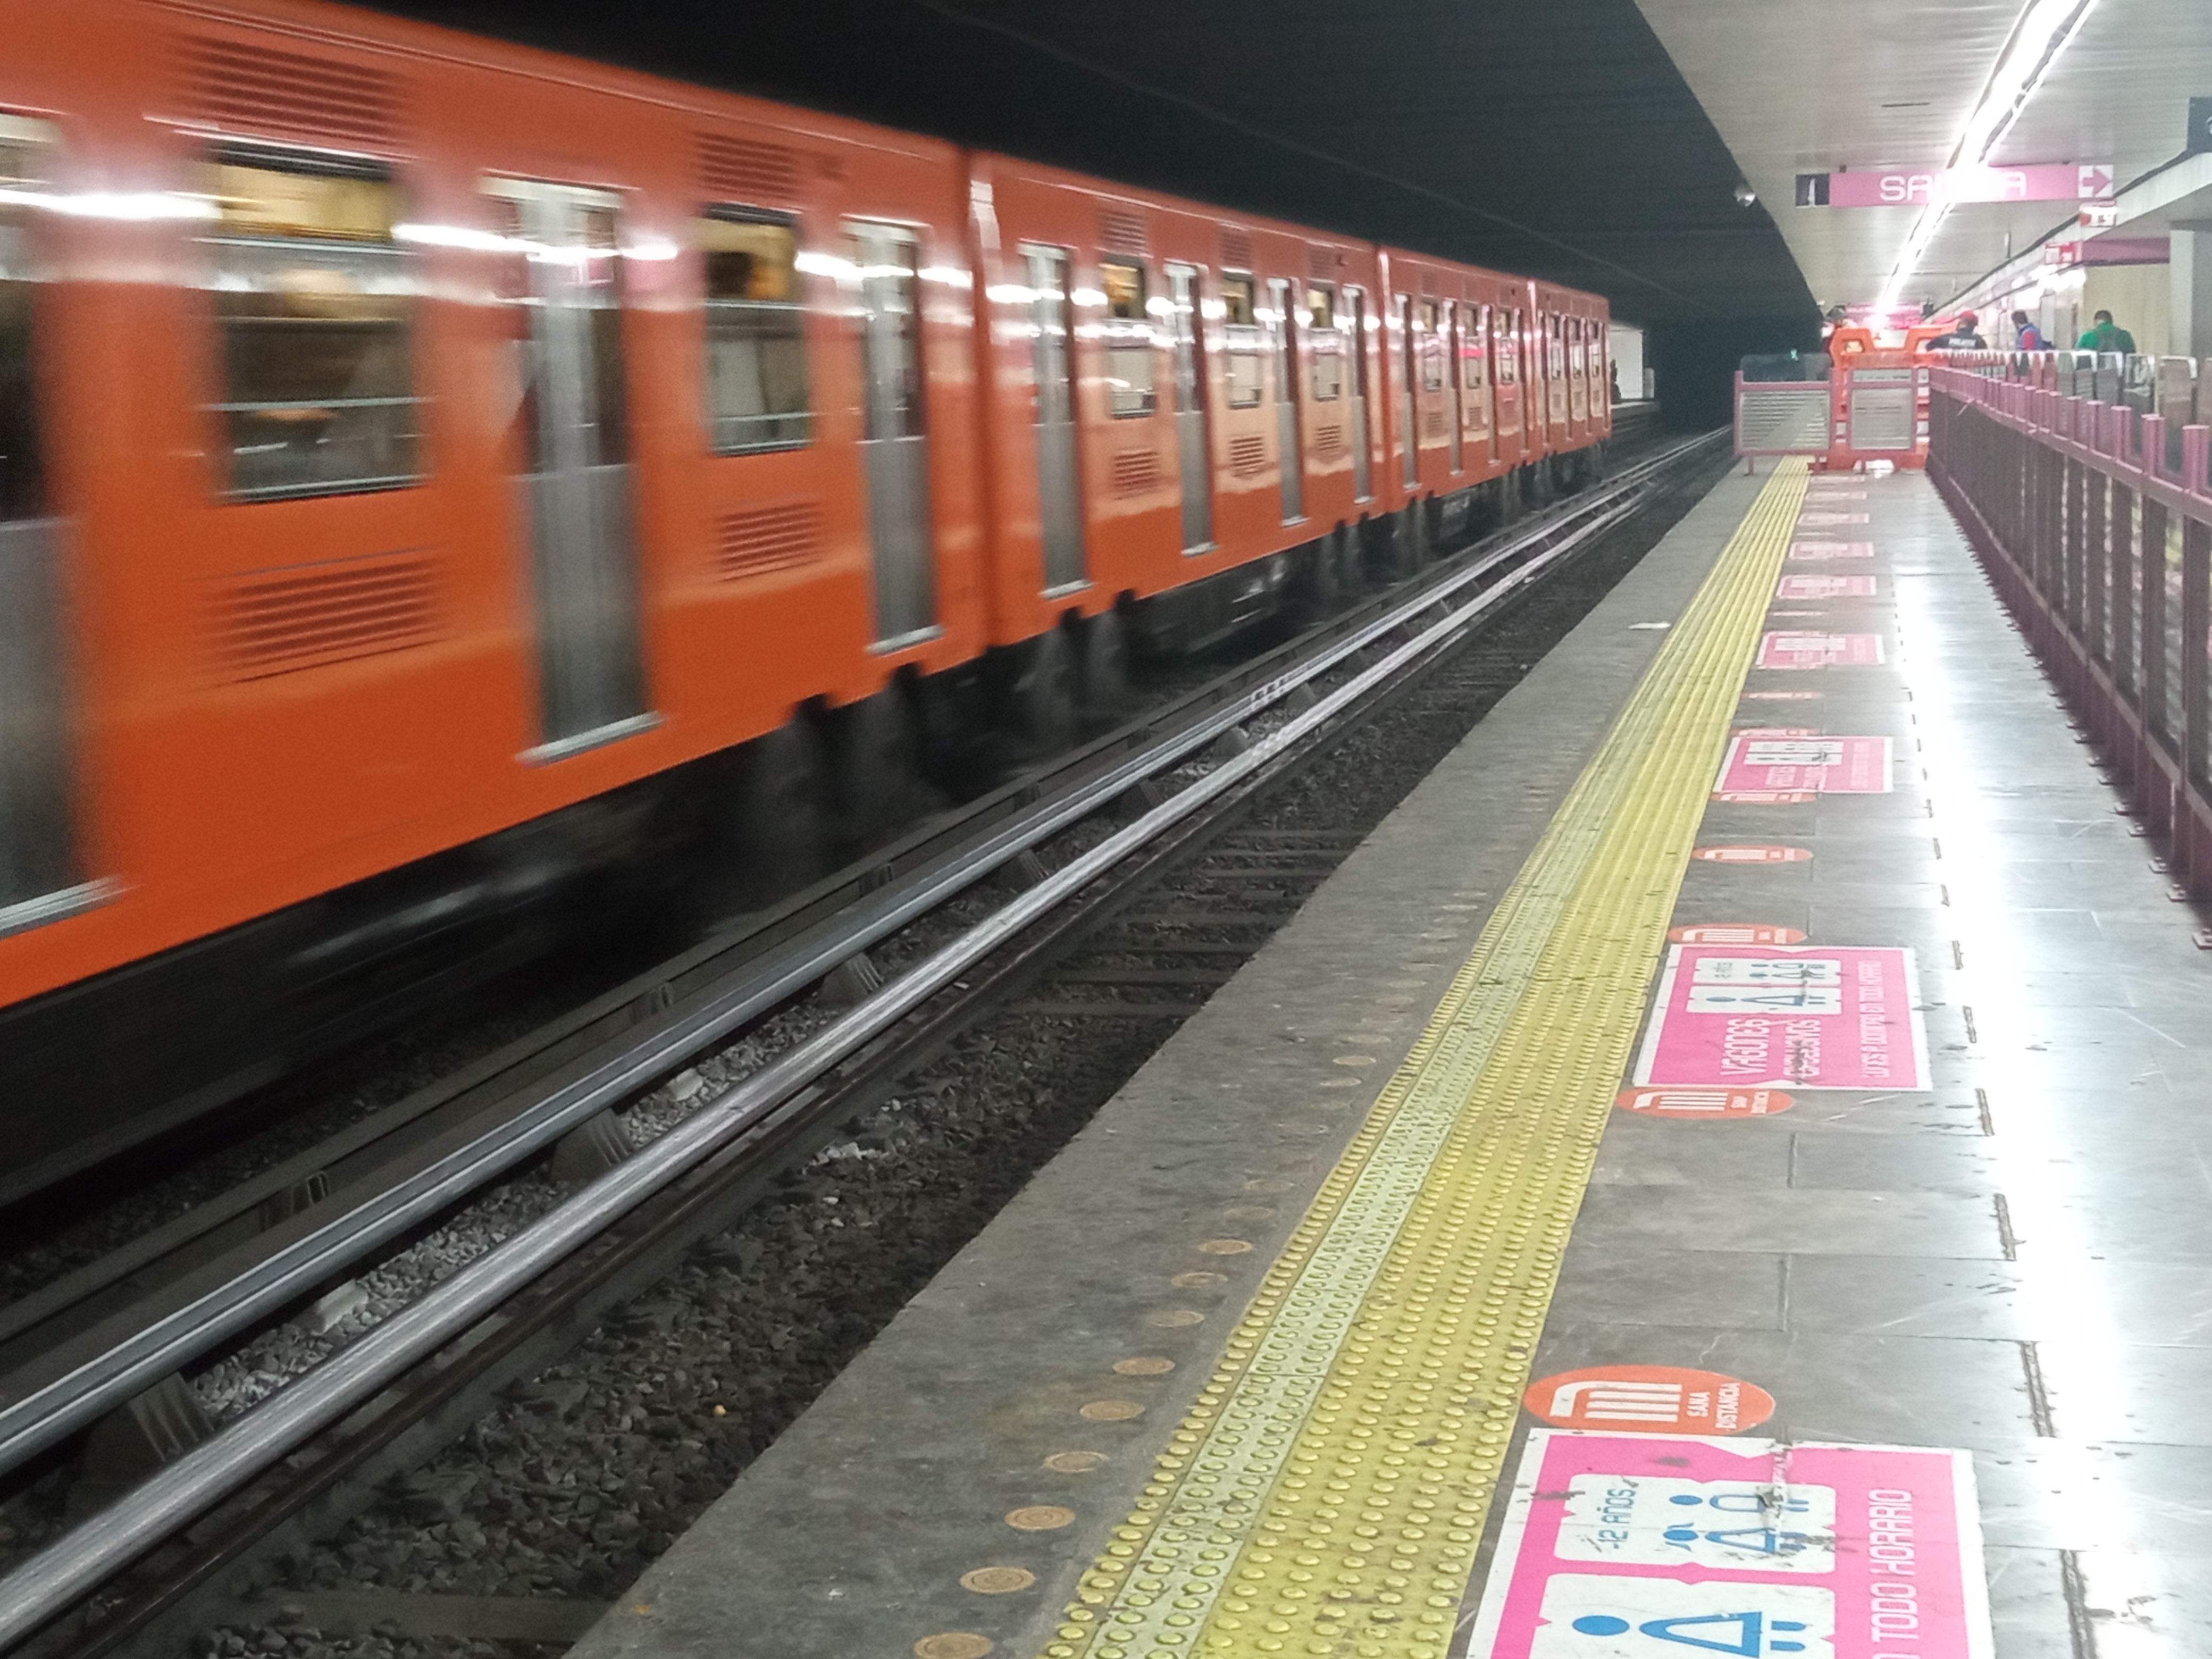 Ciudad de México, julio 7, 2022.
Aspecto de la estación Merced del Sistema de Transporte Colectivo Metro, perteneciente a la Línea 1, la cual tendrá una remodelación.
Foto: Karina Hernández / Infobae